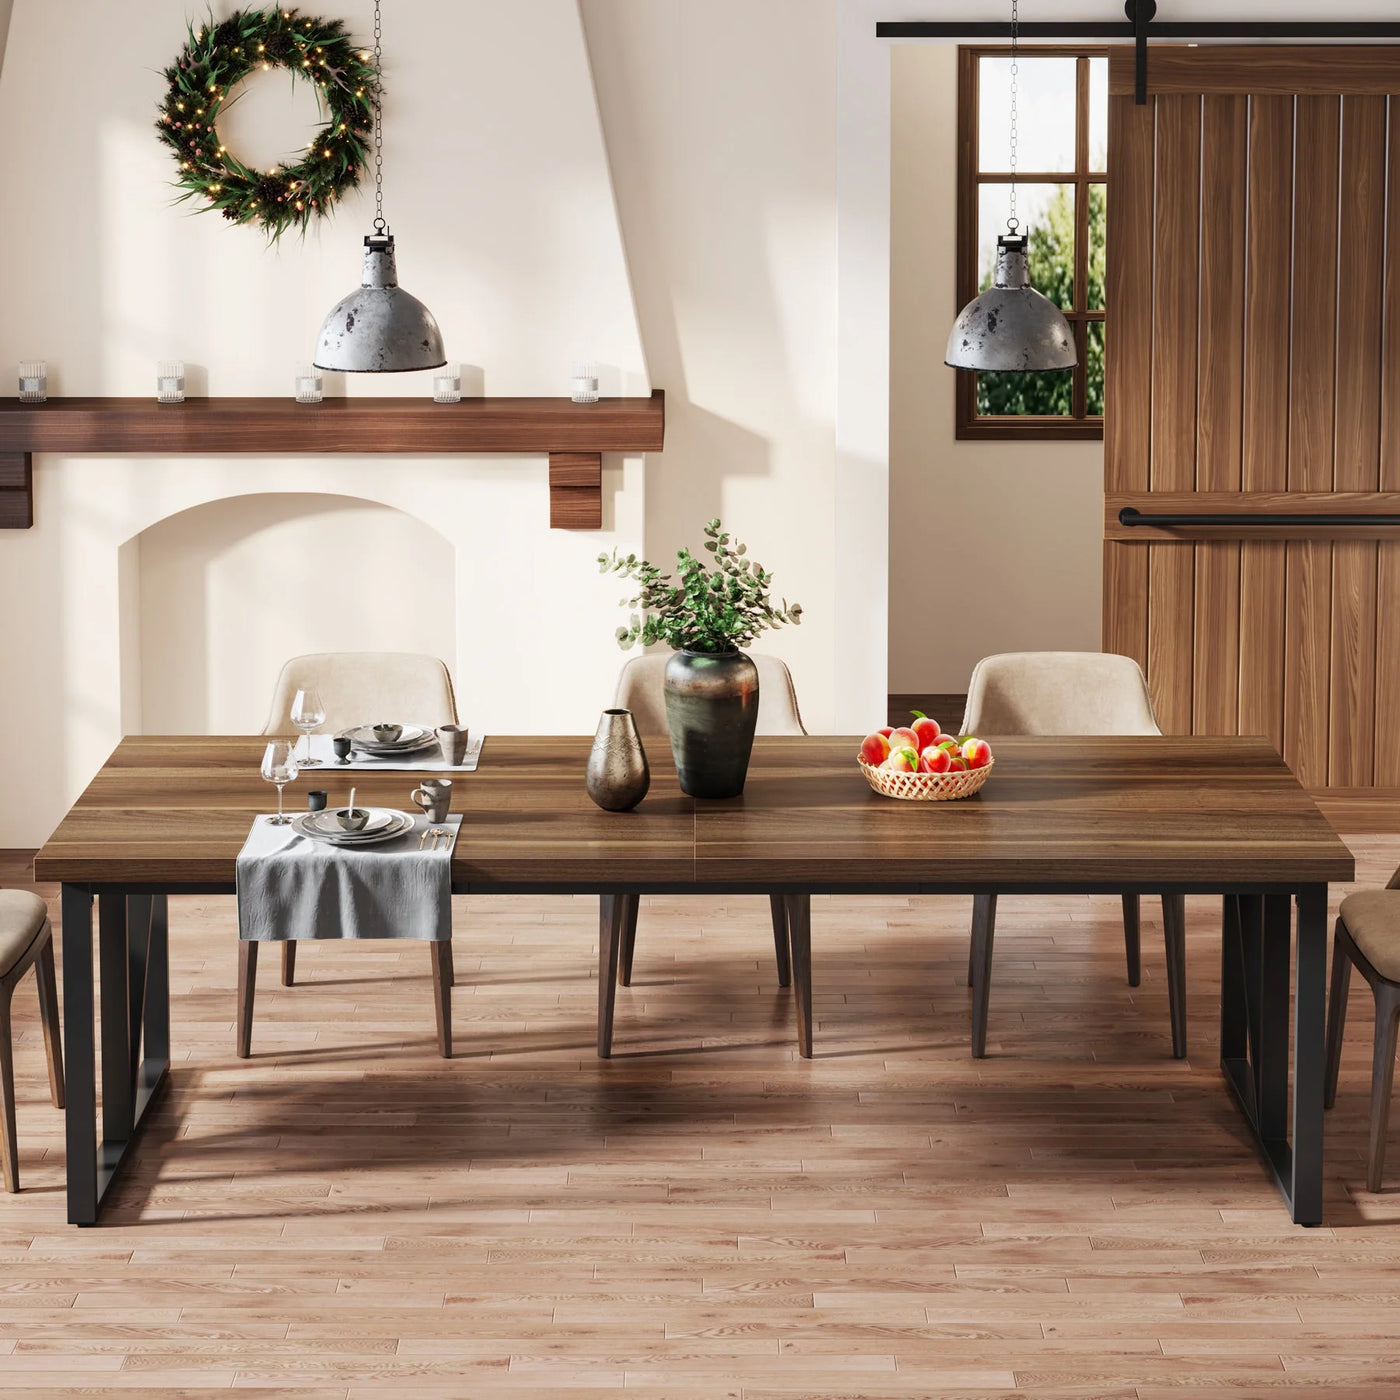 Mesa de comedor Monter de madera, mesa de cocina rectangular para 8-10 personas